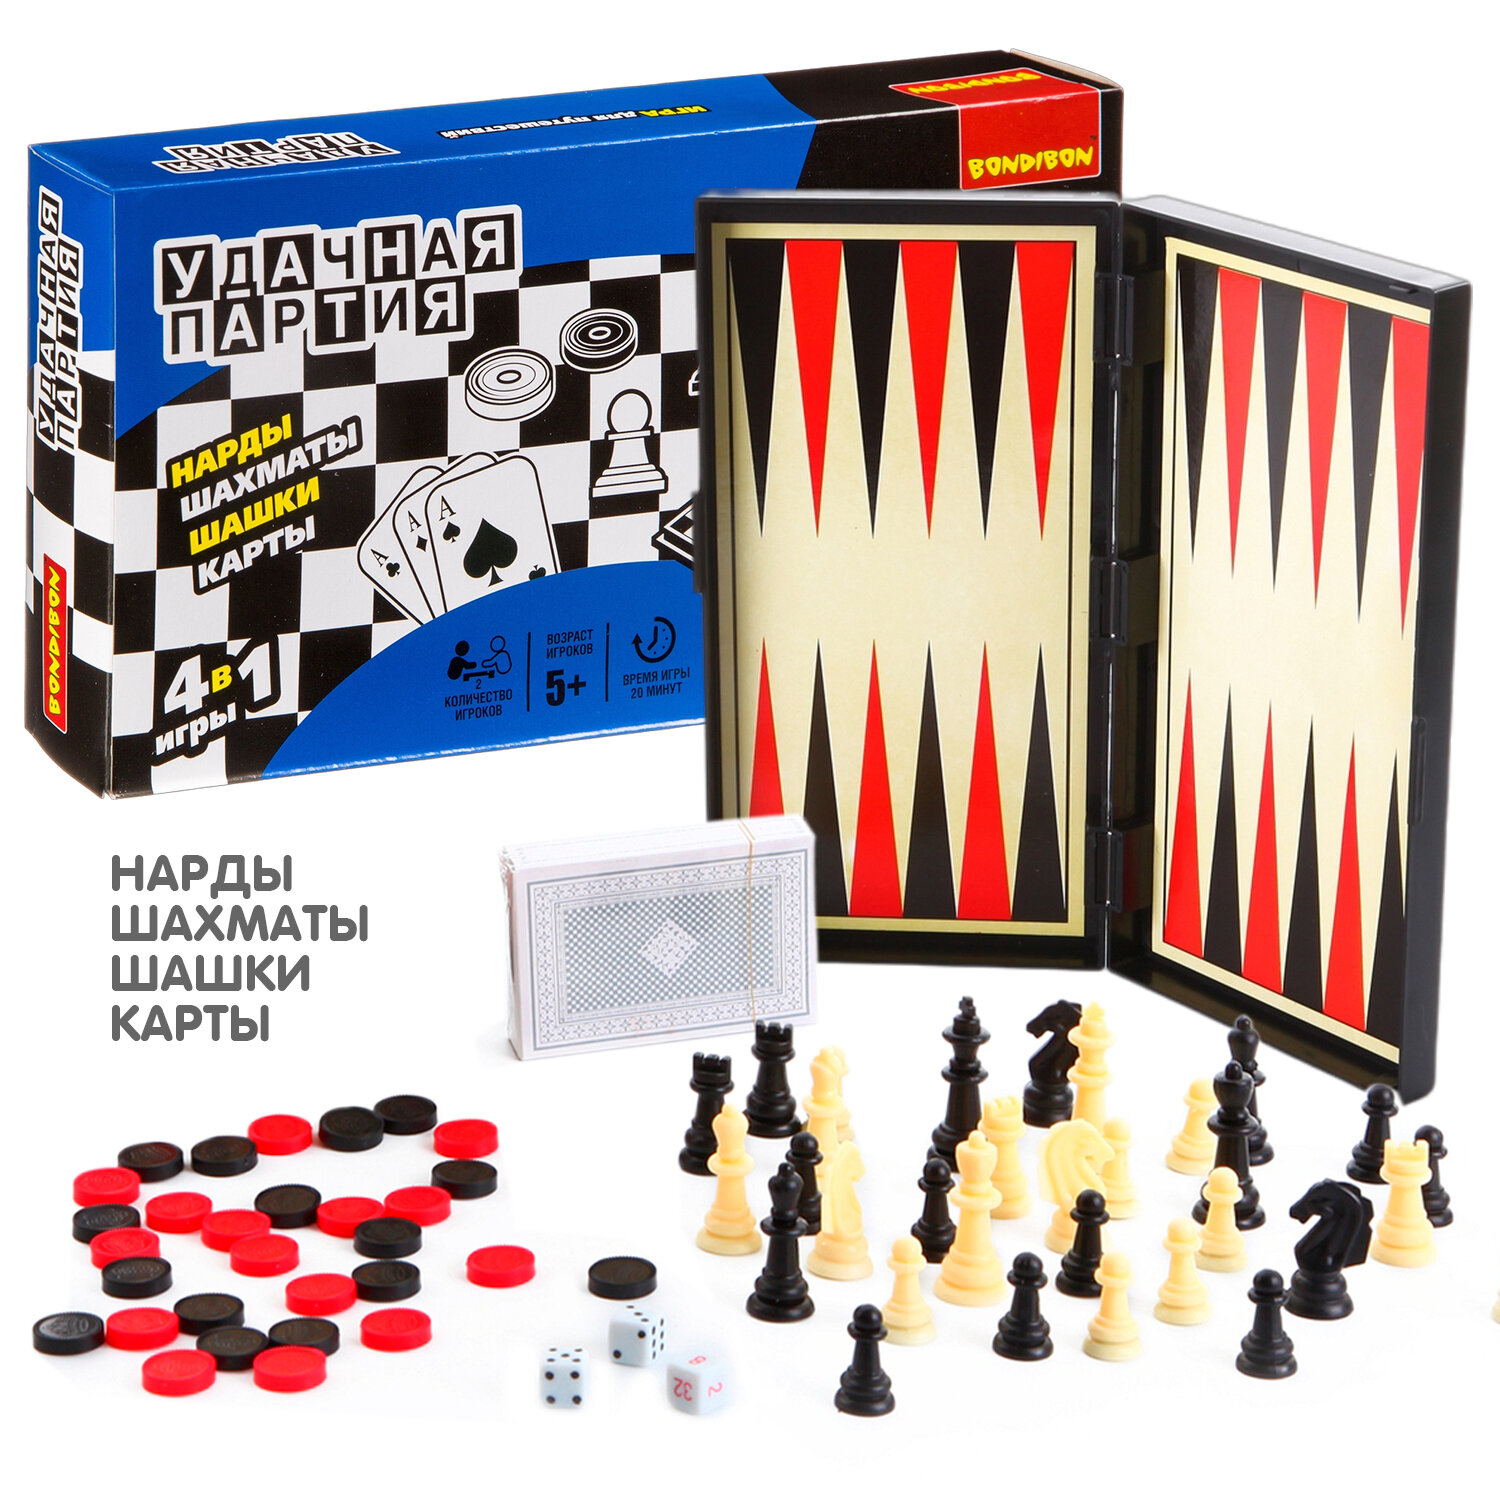 Набор настольных игр Bondibon "Удачная партия", 4в1: нарды, шашки, шахматы, карты в дорогу на магнитах / Подарок мужчине, парню, мужу, детям